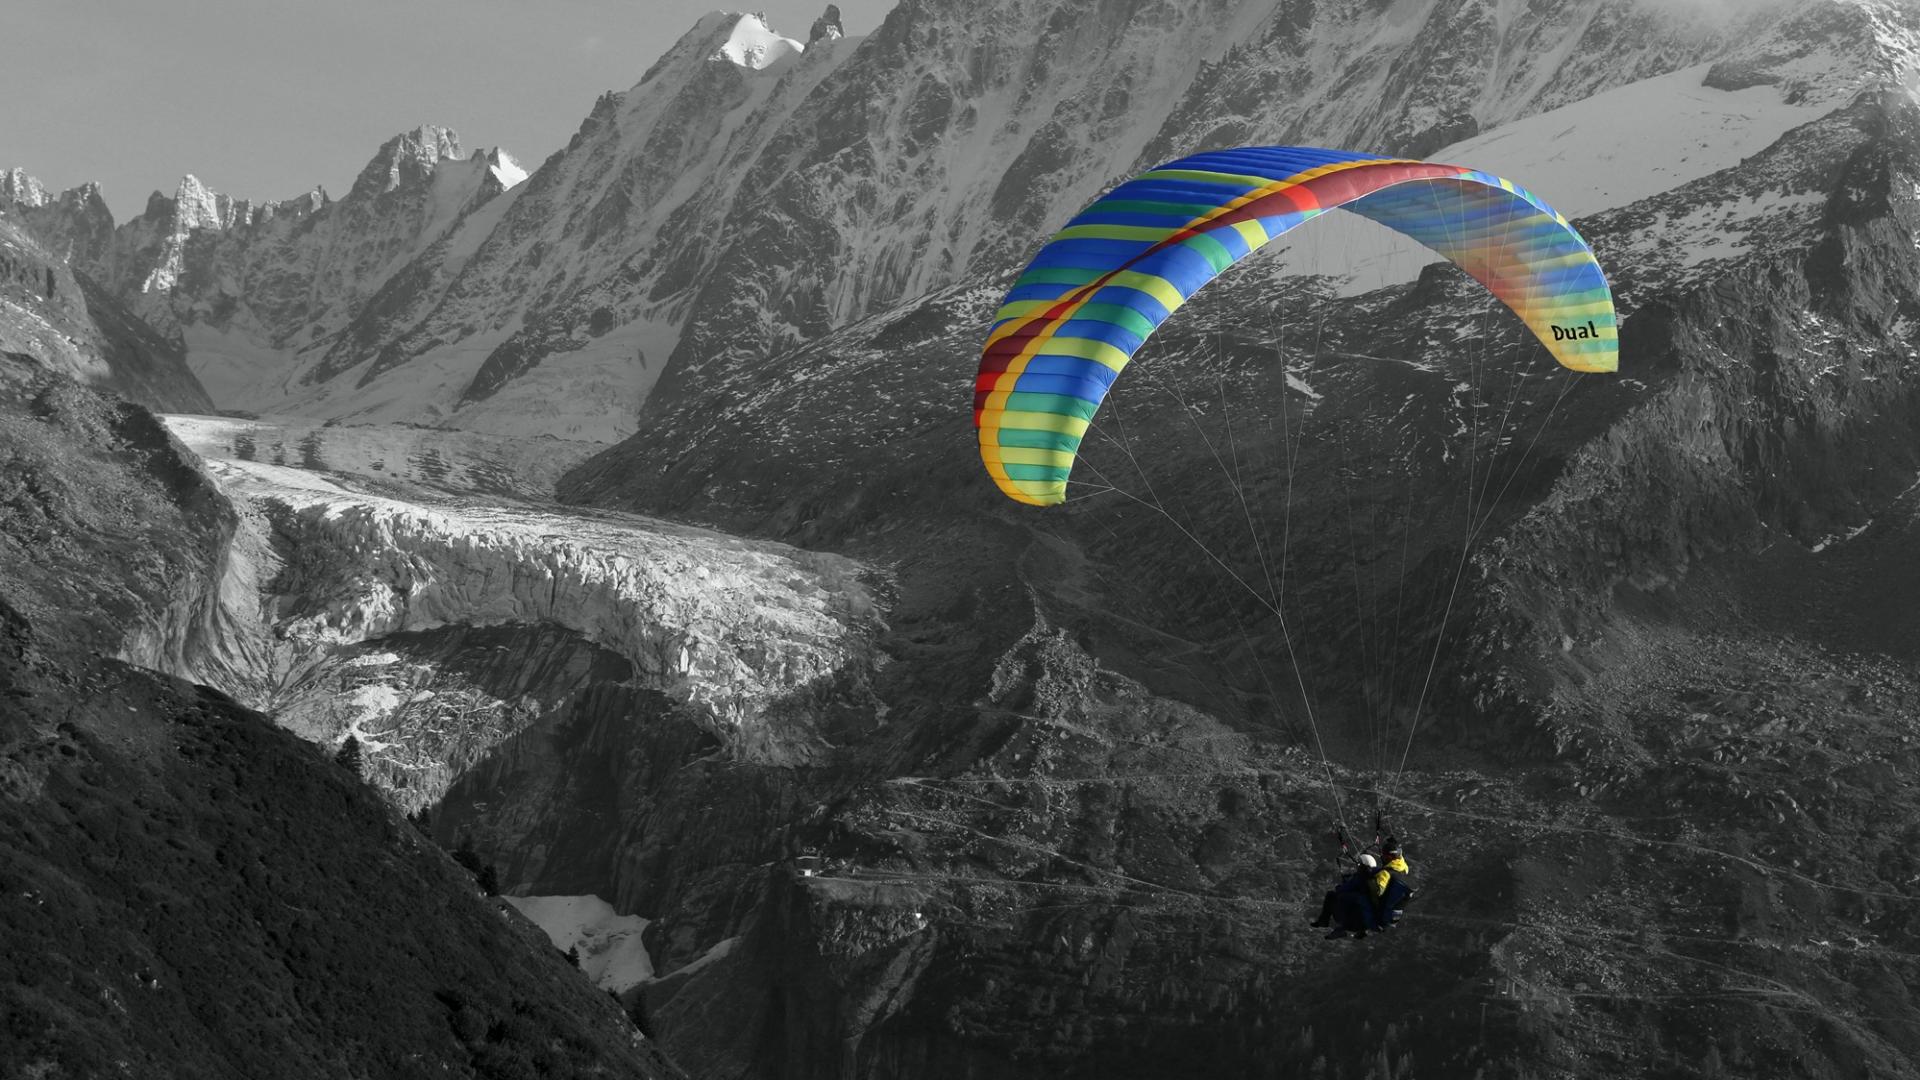 Extra long paragliding flight